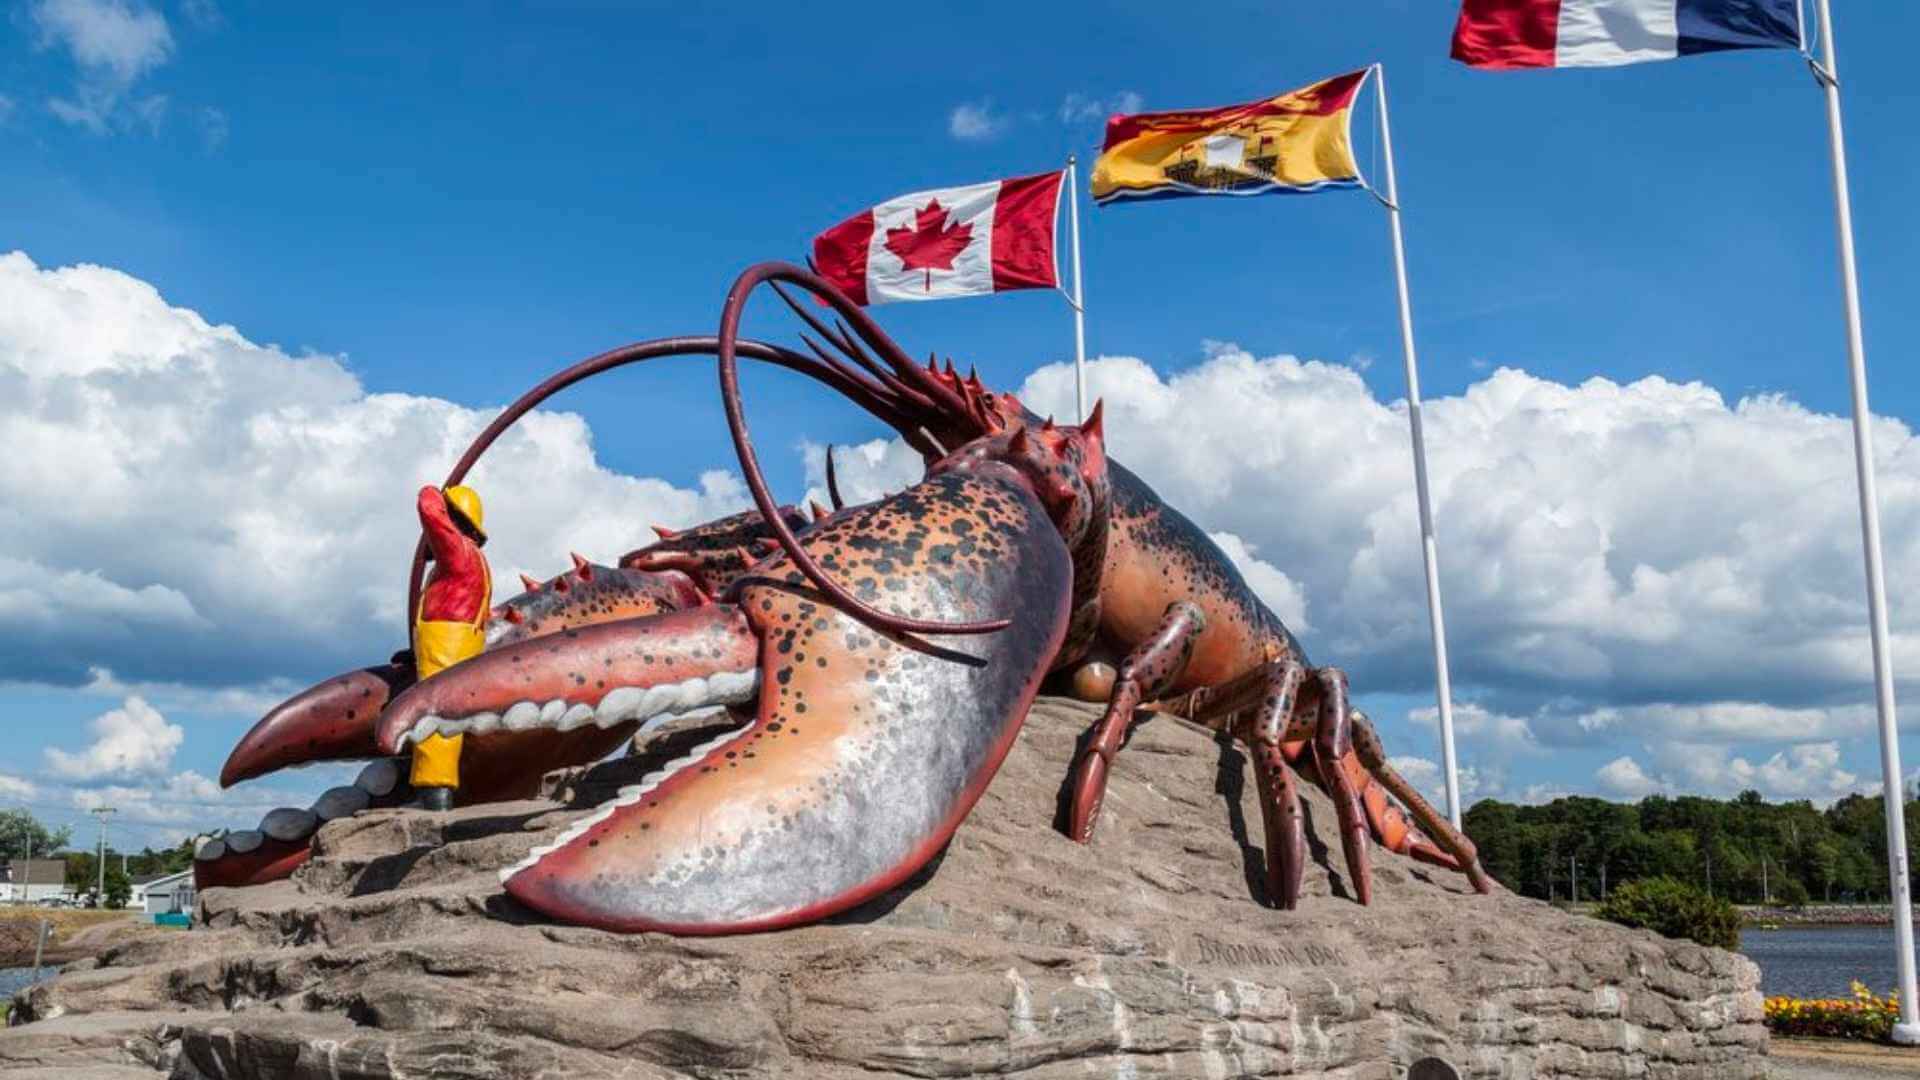 Sculptures-in-Canada